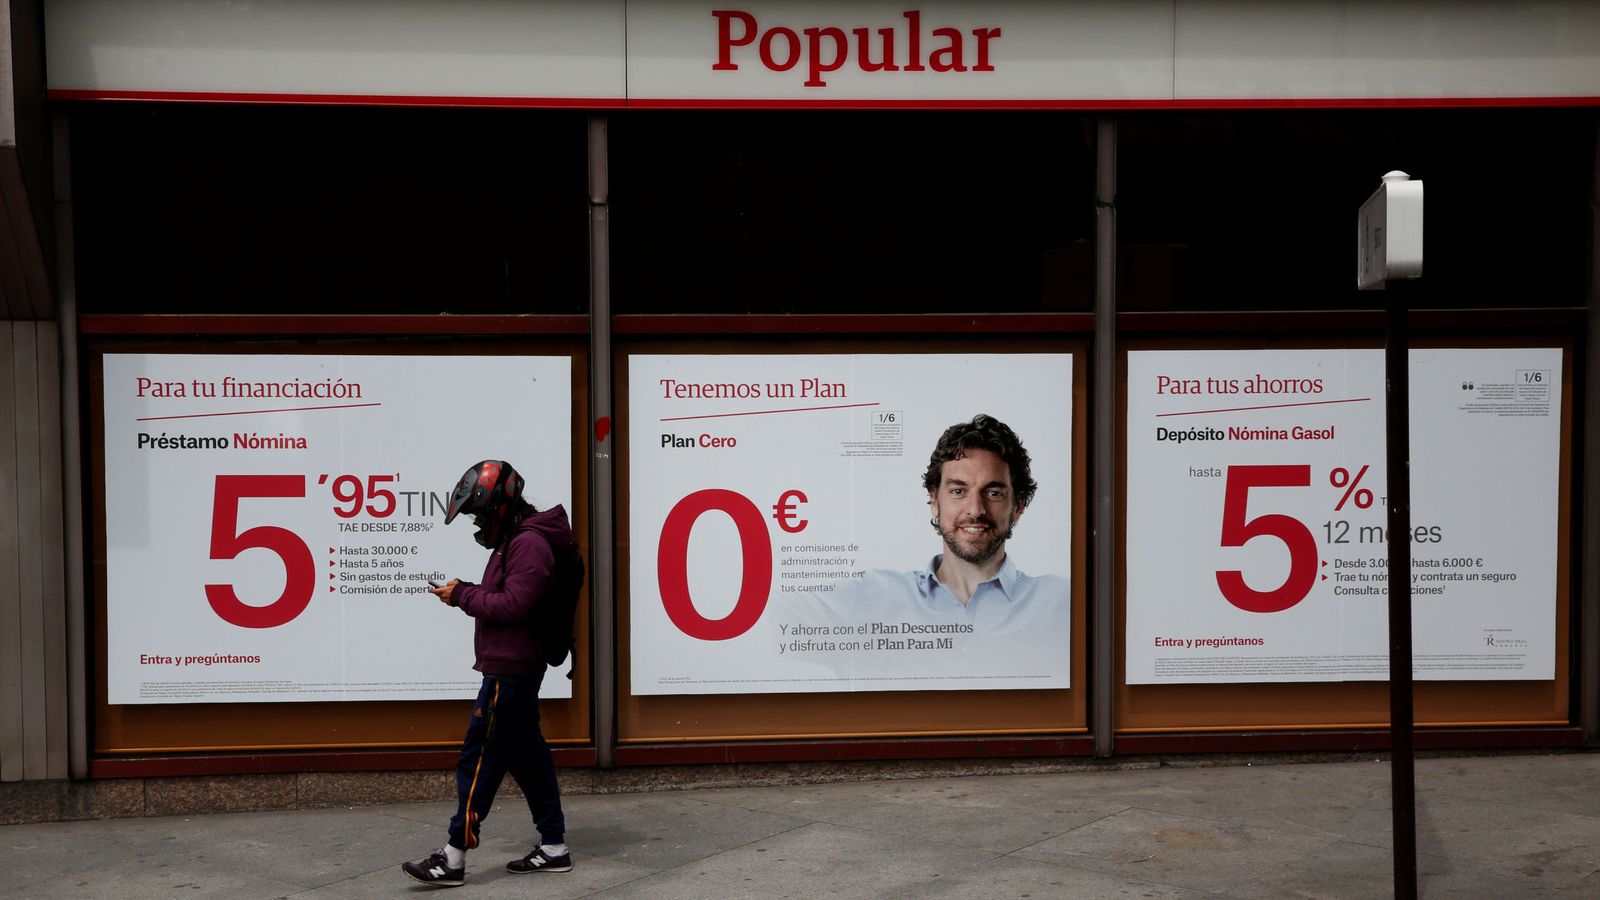 Foto: Sucursal del Banco Popular en Madrid (Reuters)